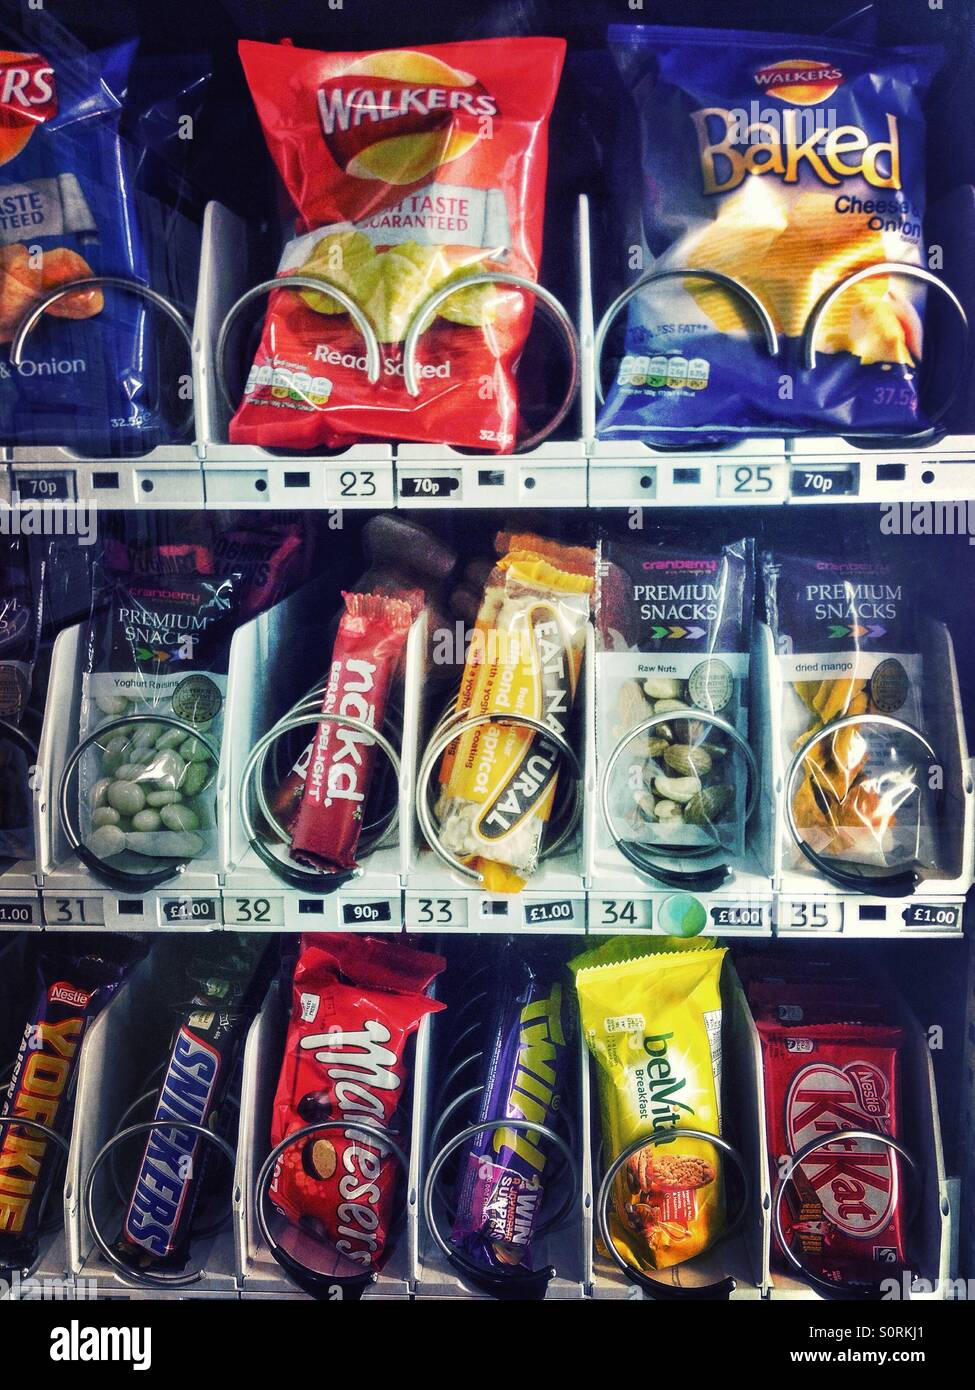 Un distributeur automatique plein de chips et de chocolat Photo Stock -  Alamy